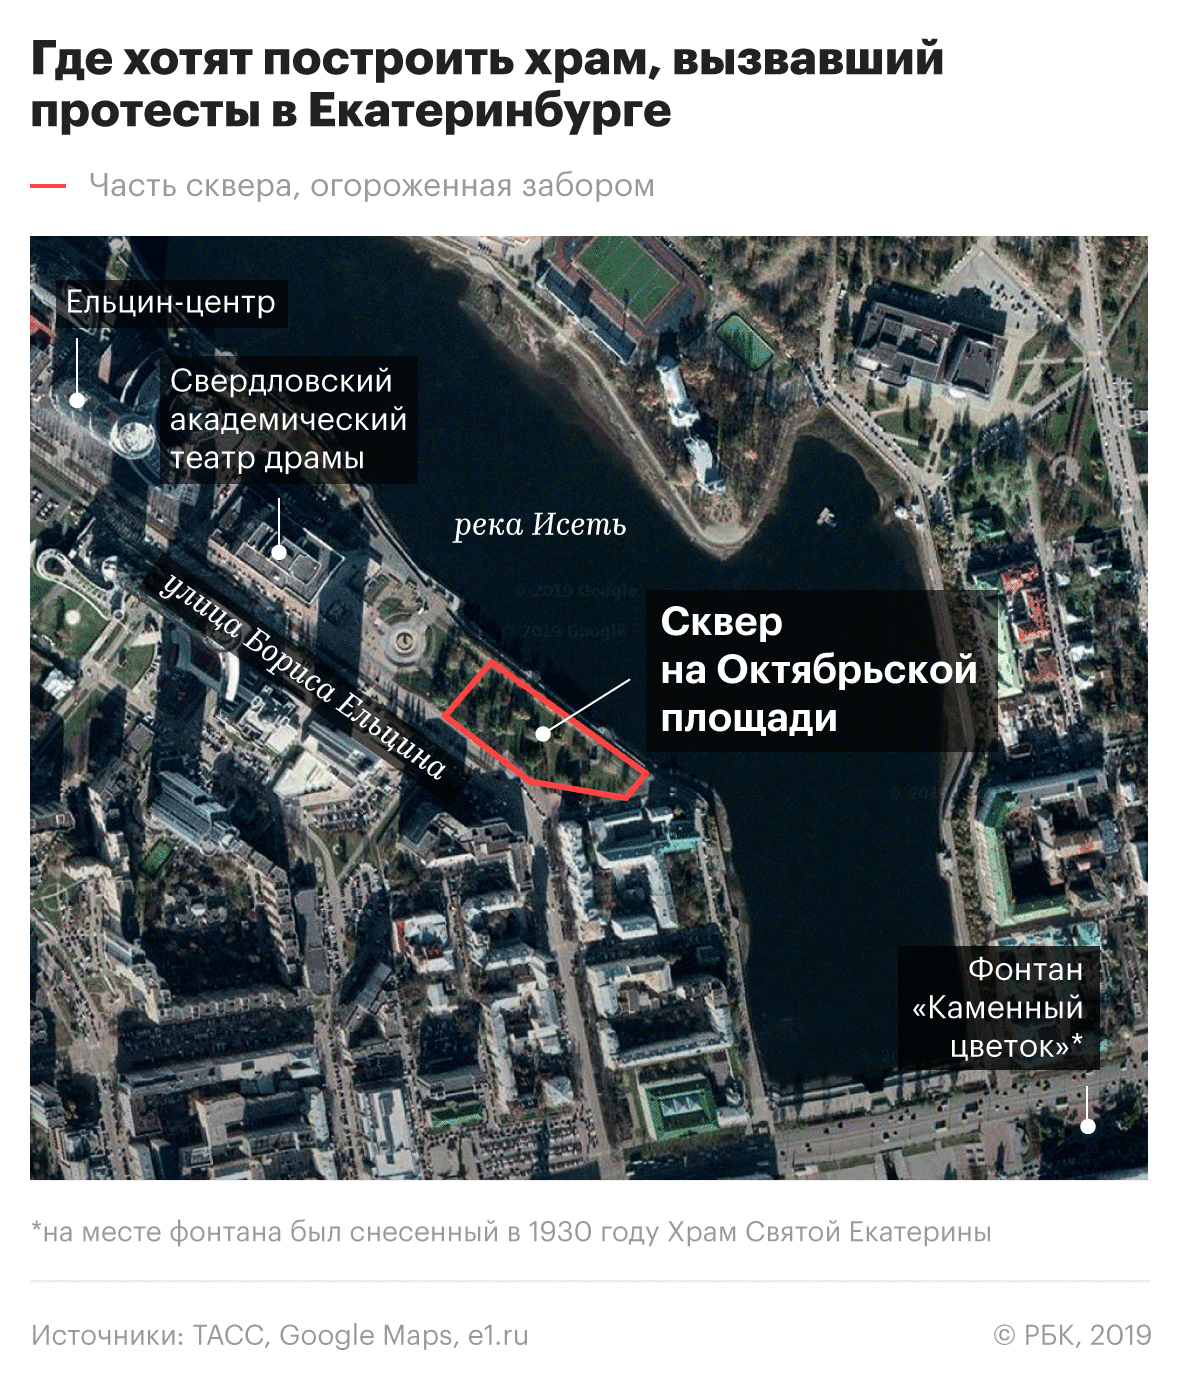 Конфликт из-за храма в Екатеринбурге. Что важно знать